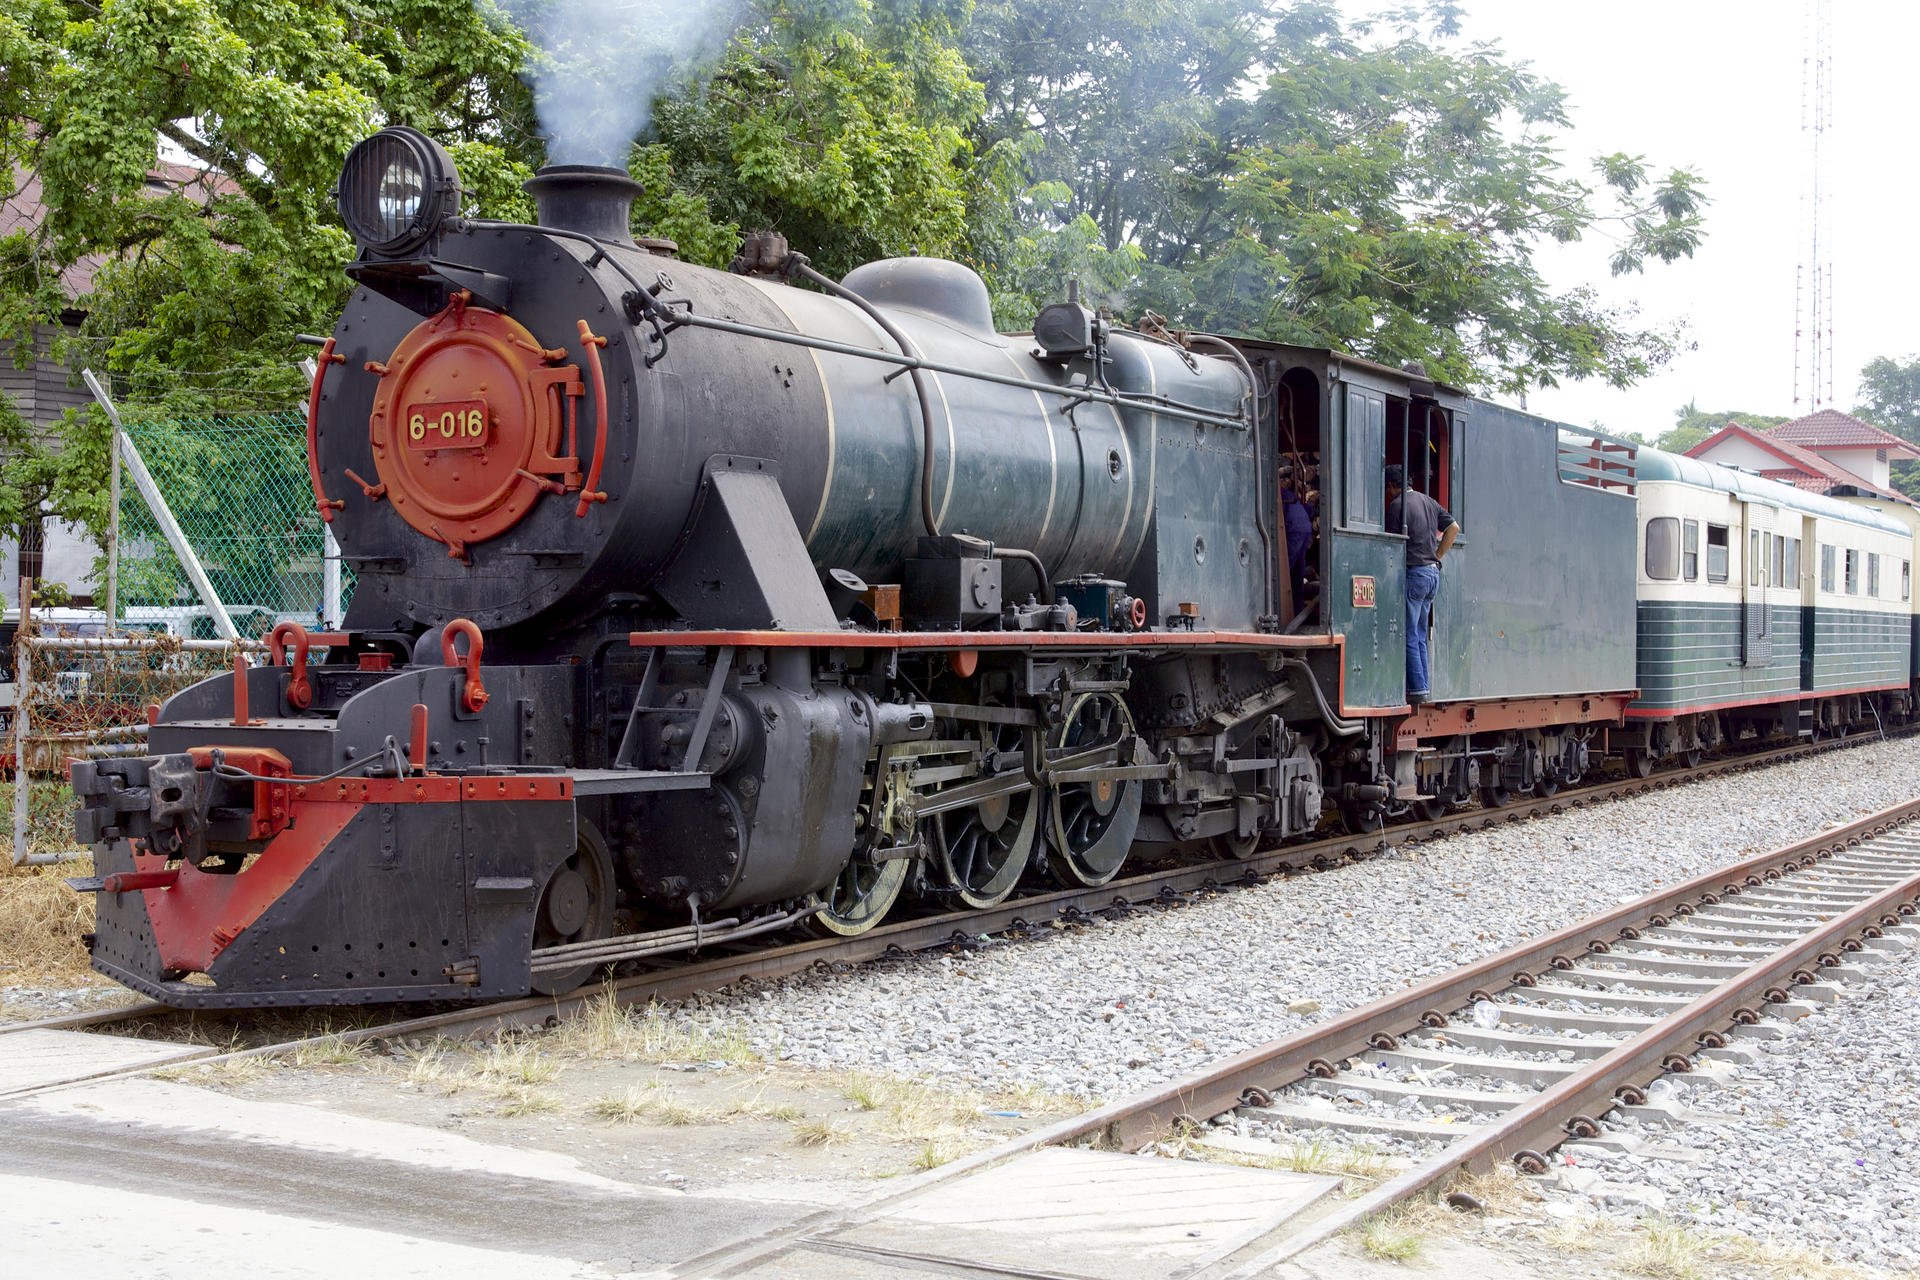 North Borneo Railway locomotive No6-016.